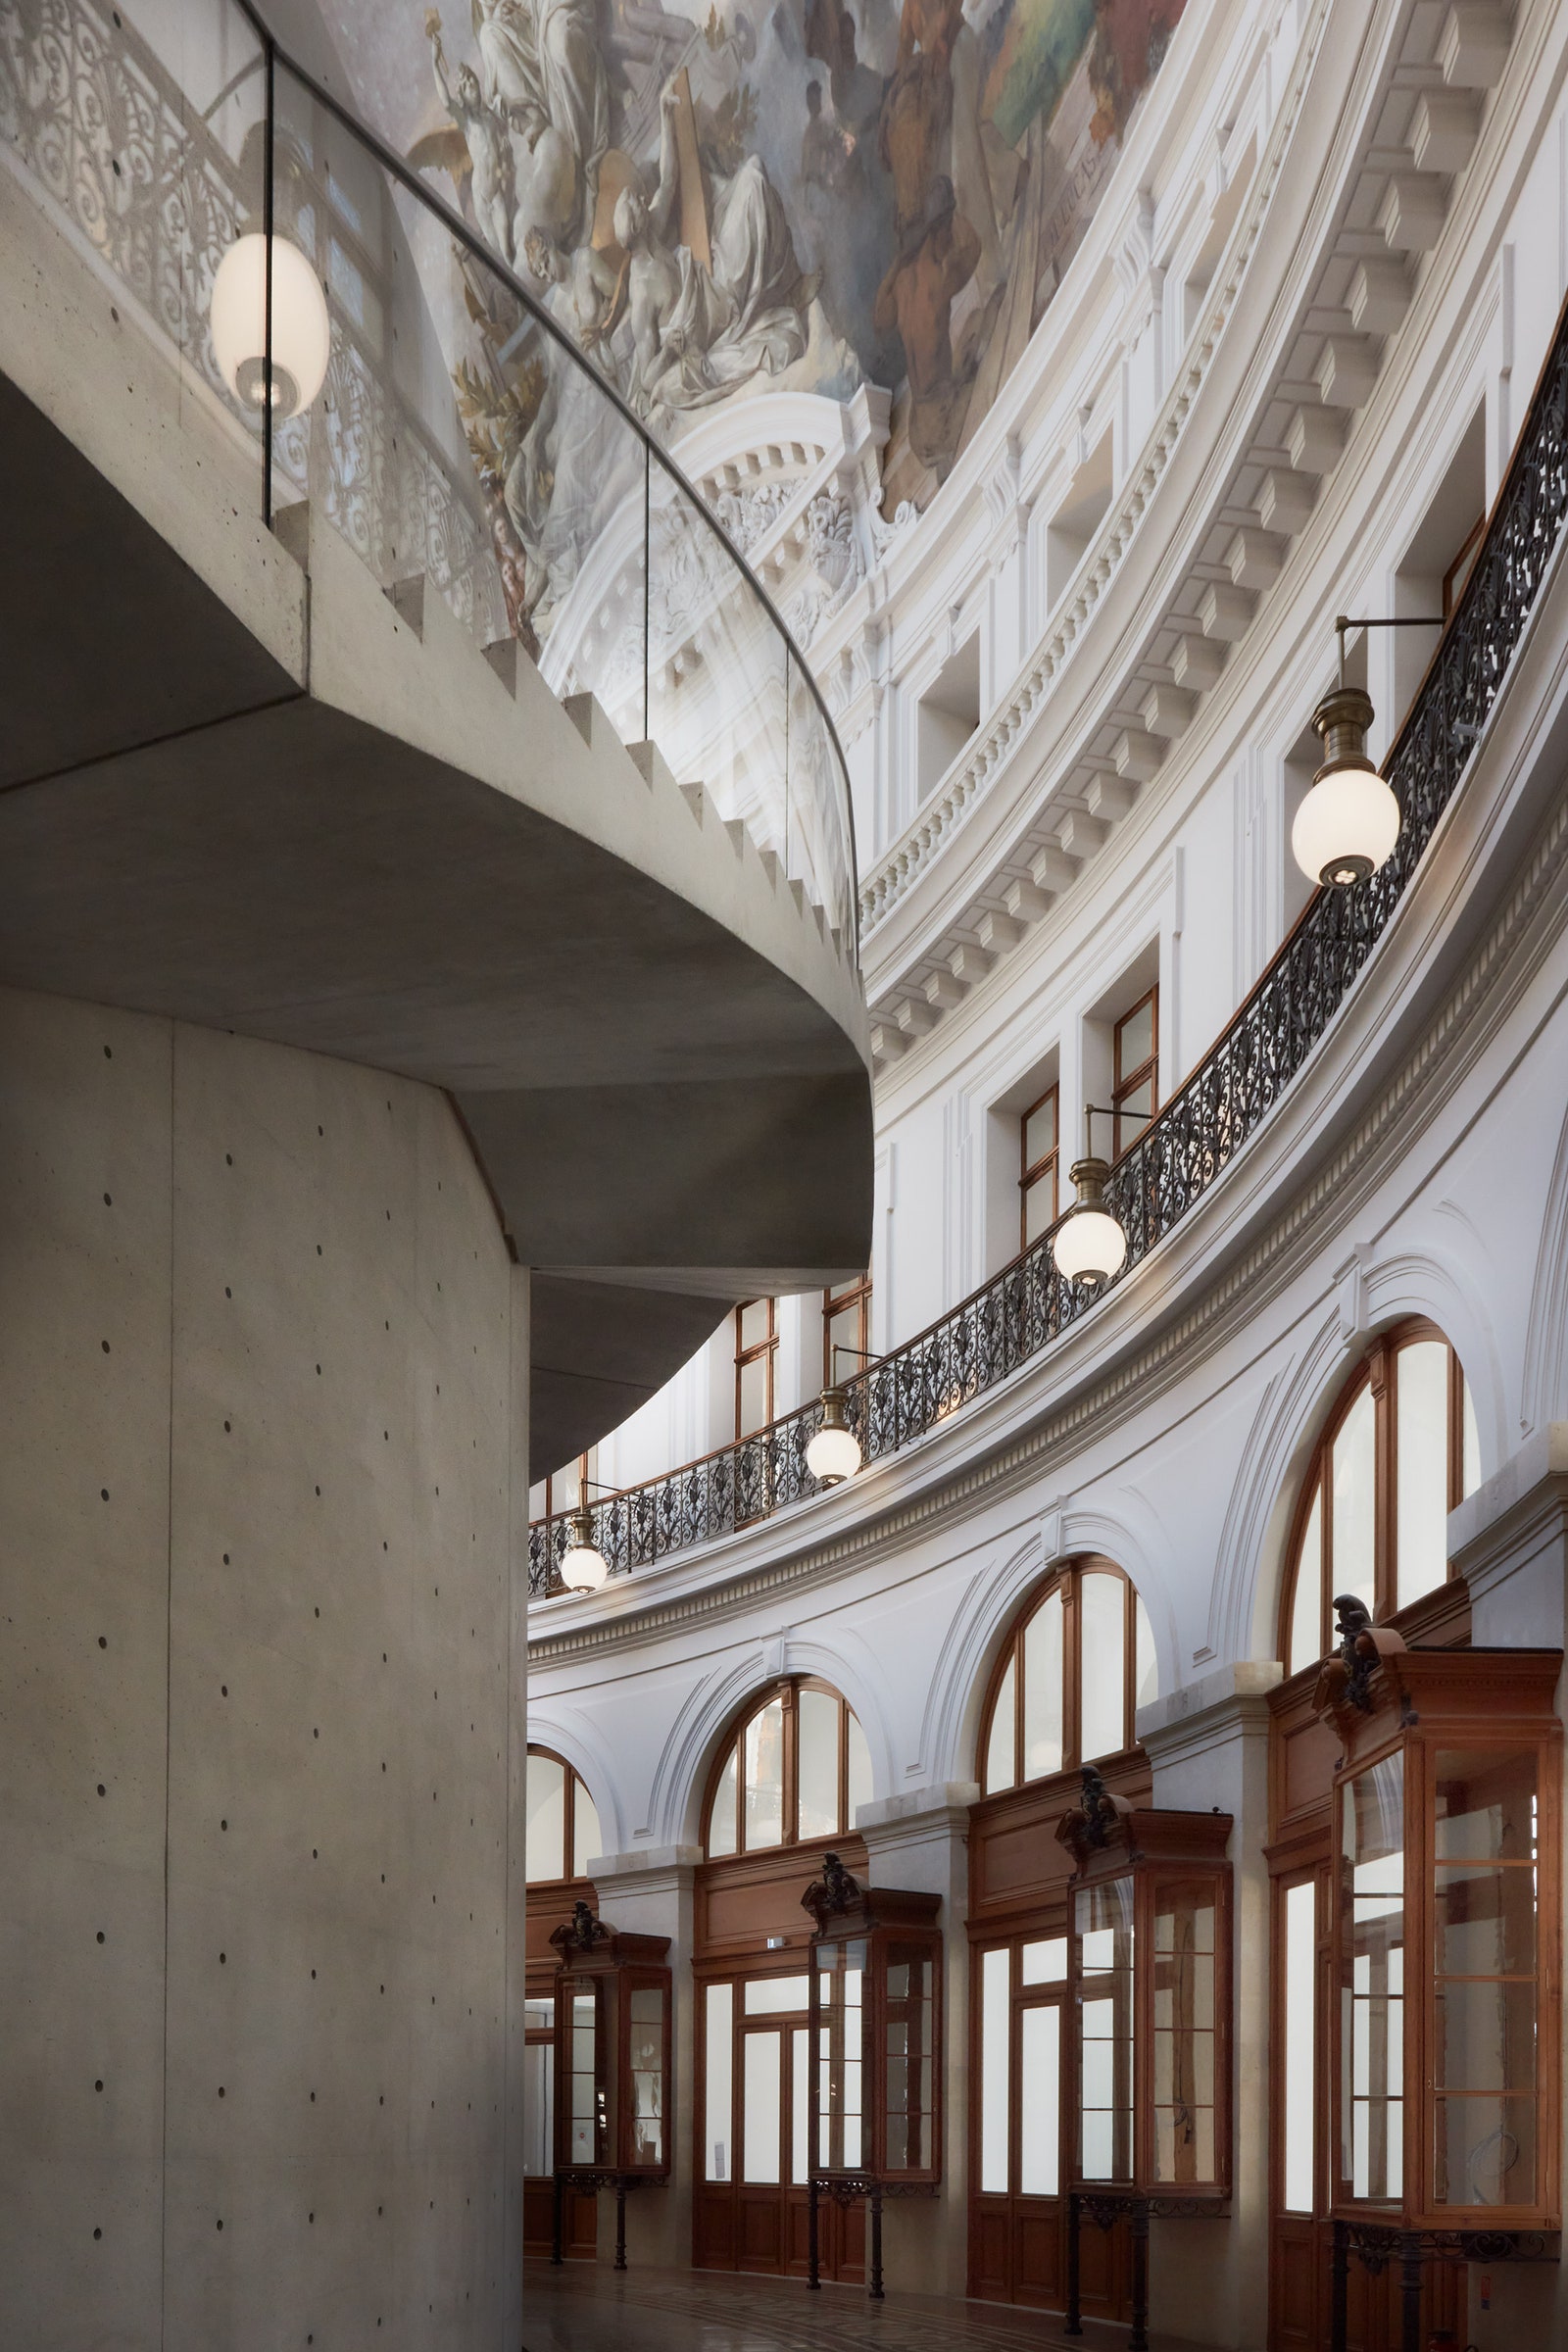 Музей современного искусства Франсуа Пино по проекту Тадао Андо